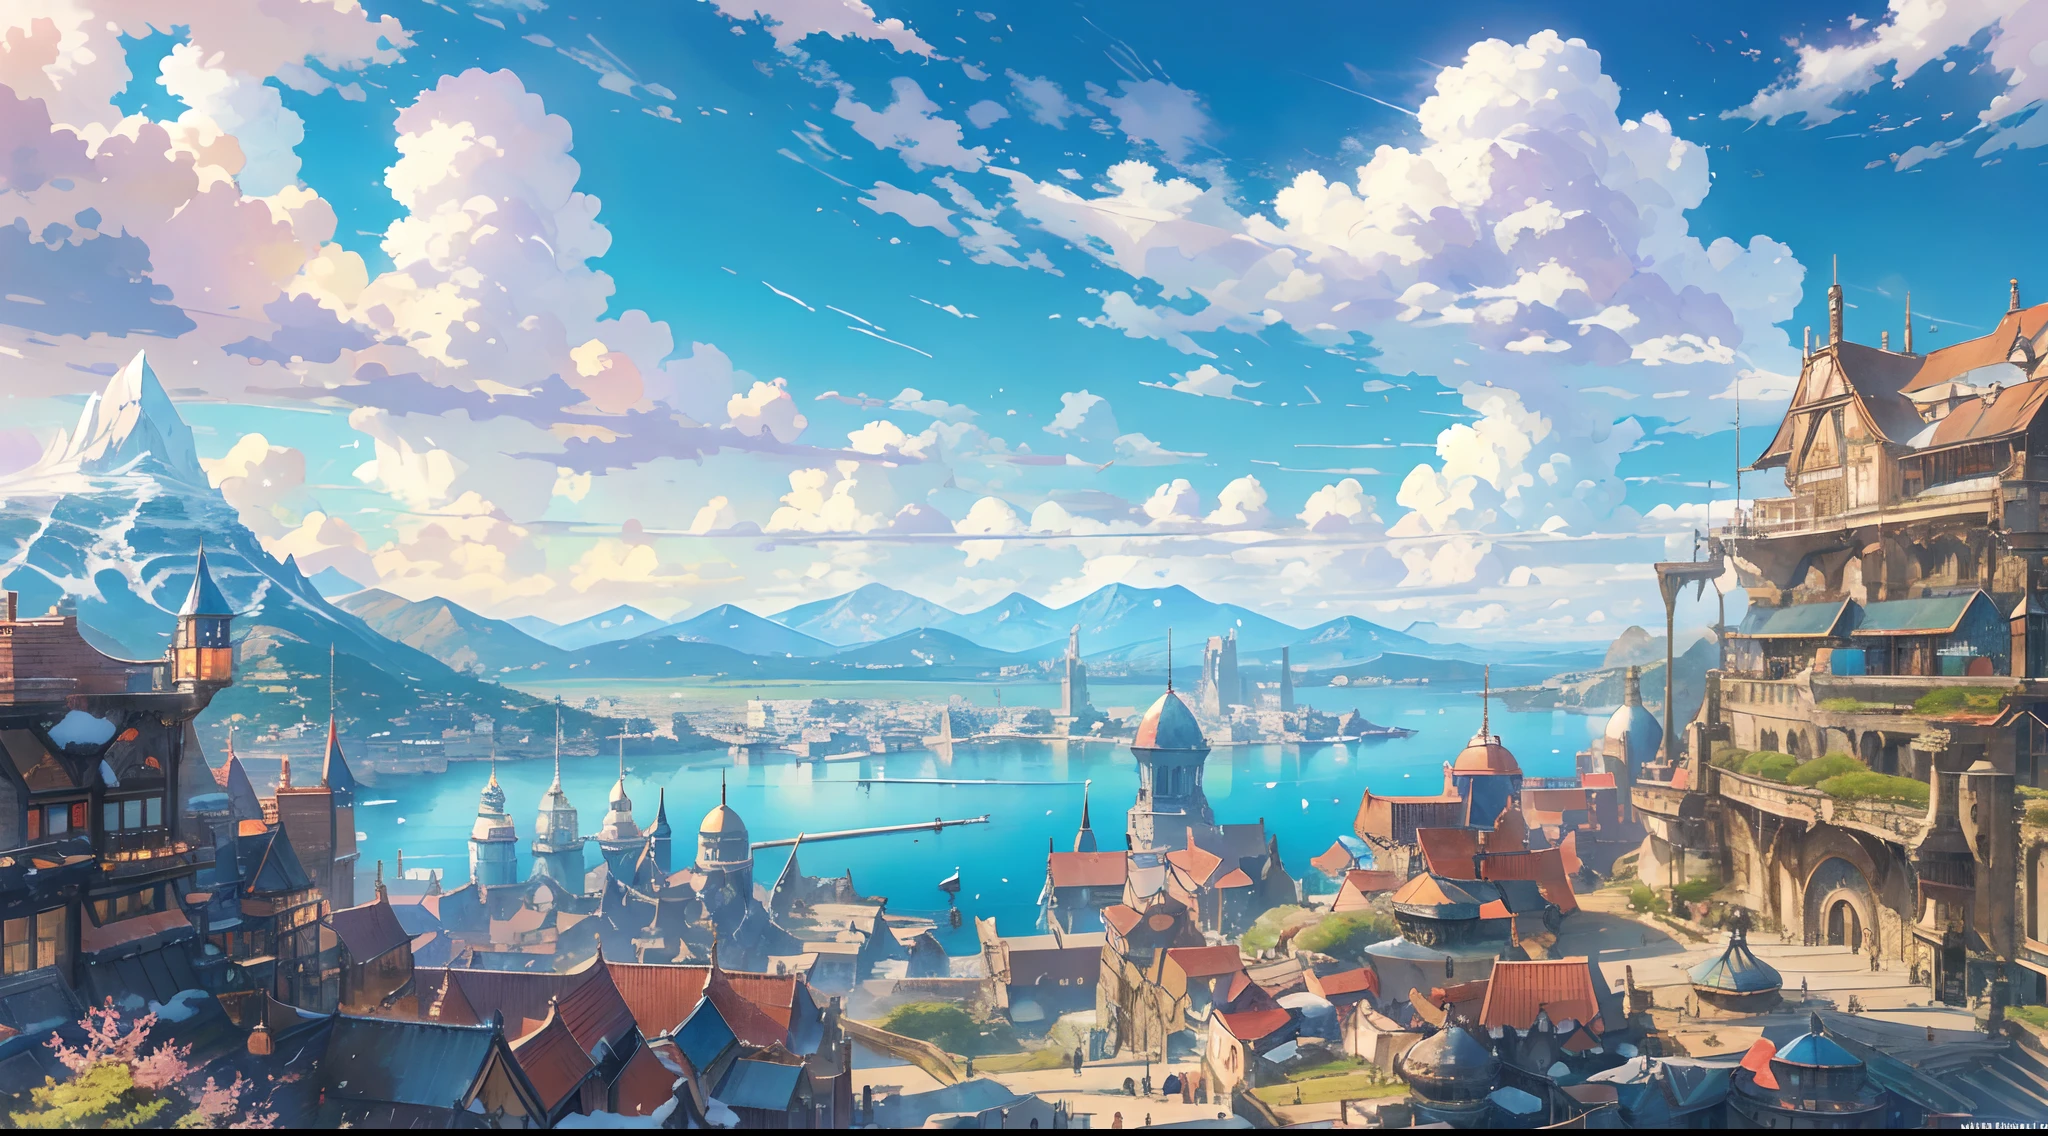 zeigt eine Szene einer Hafenstadt in einer Fantasiewelt, in der Schiffe im Dock liegen und die Silhouette eines schneebedeckten Berges tagsüber von weitem zu sehen ist und der Himmel im Frühling mit hellem Sonnenlicht sehr klar ist, 8K, grelle Farbe, Intensive, lebendige Farbe, blauer azurblauer Himmel, weiße Wolken, HDR, Kunstwerk, Anime-Stil, Final Fantasy, Zelda, Makoto Shinkai, Hayao Miyazaki, extrem detailliert, Super detailliert, Knackig, scharfes Bild, bestes Ergebnis, sehr detaillierte und zauberhafte Beleuchtung, komplizierte Stadtdetails, Landschaft, realistische Proportionen, höchste Qualität, Meisterwerk, draussen, magische Landschaft, perfekte Architektur, Perfektes Gebäude, Perfekter Charakter